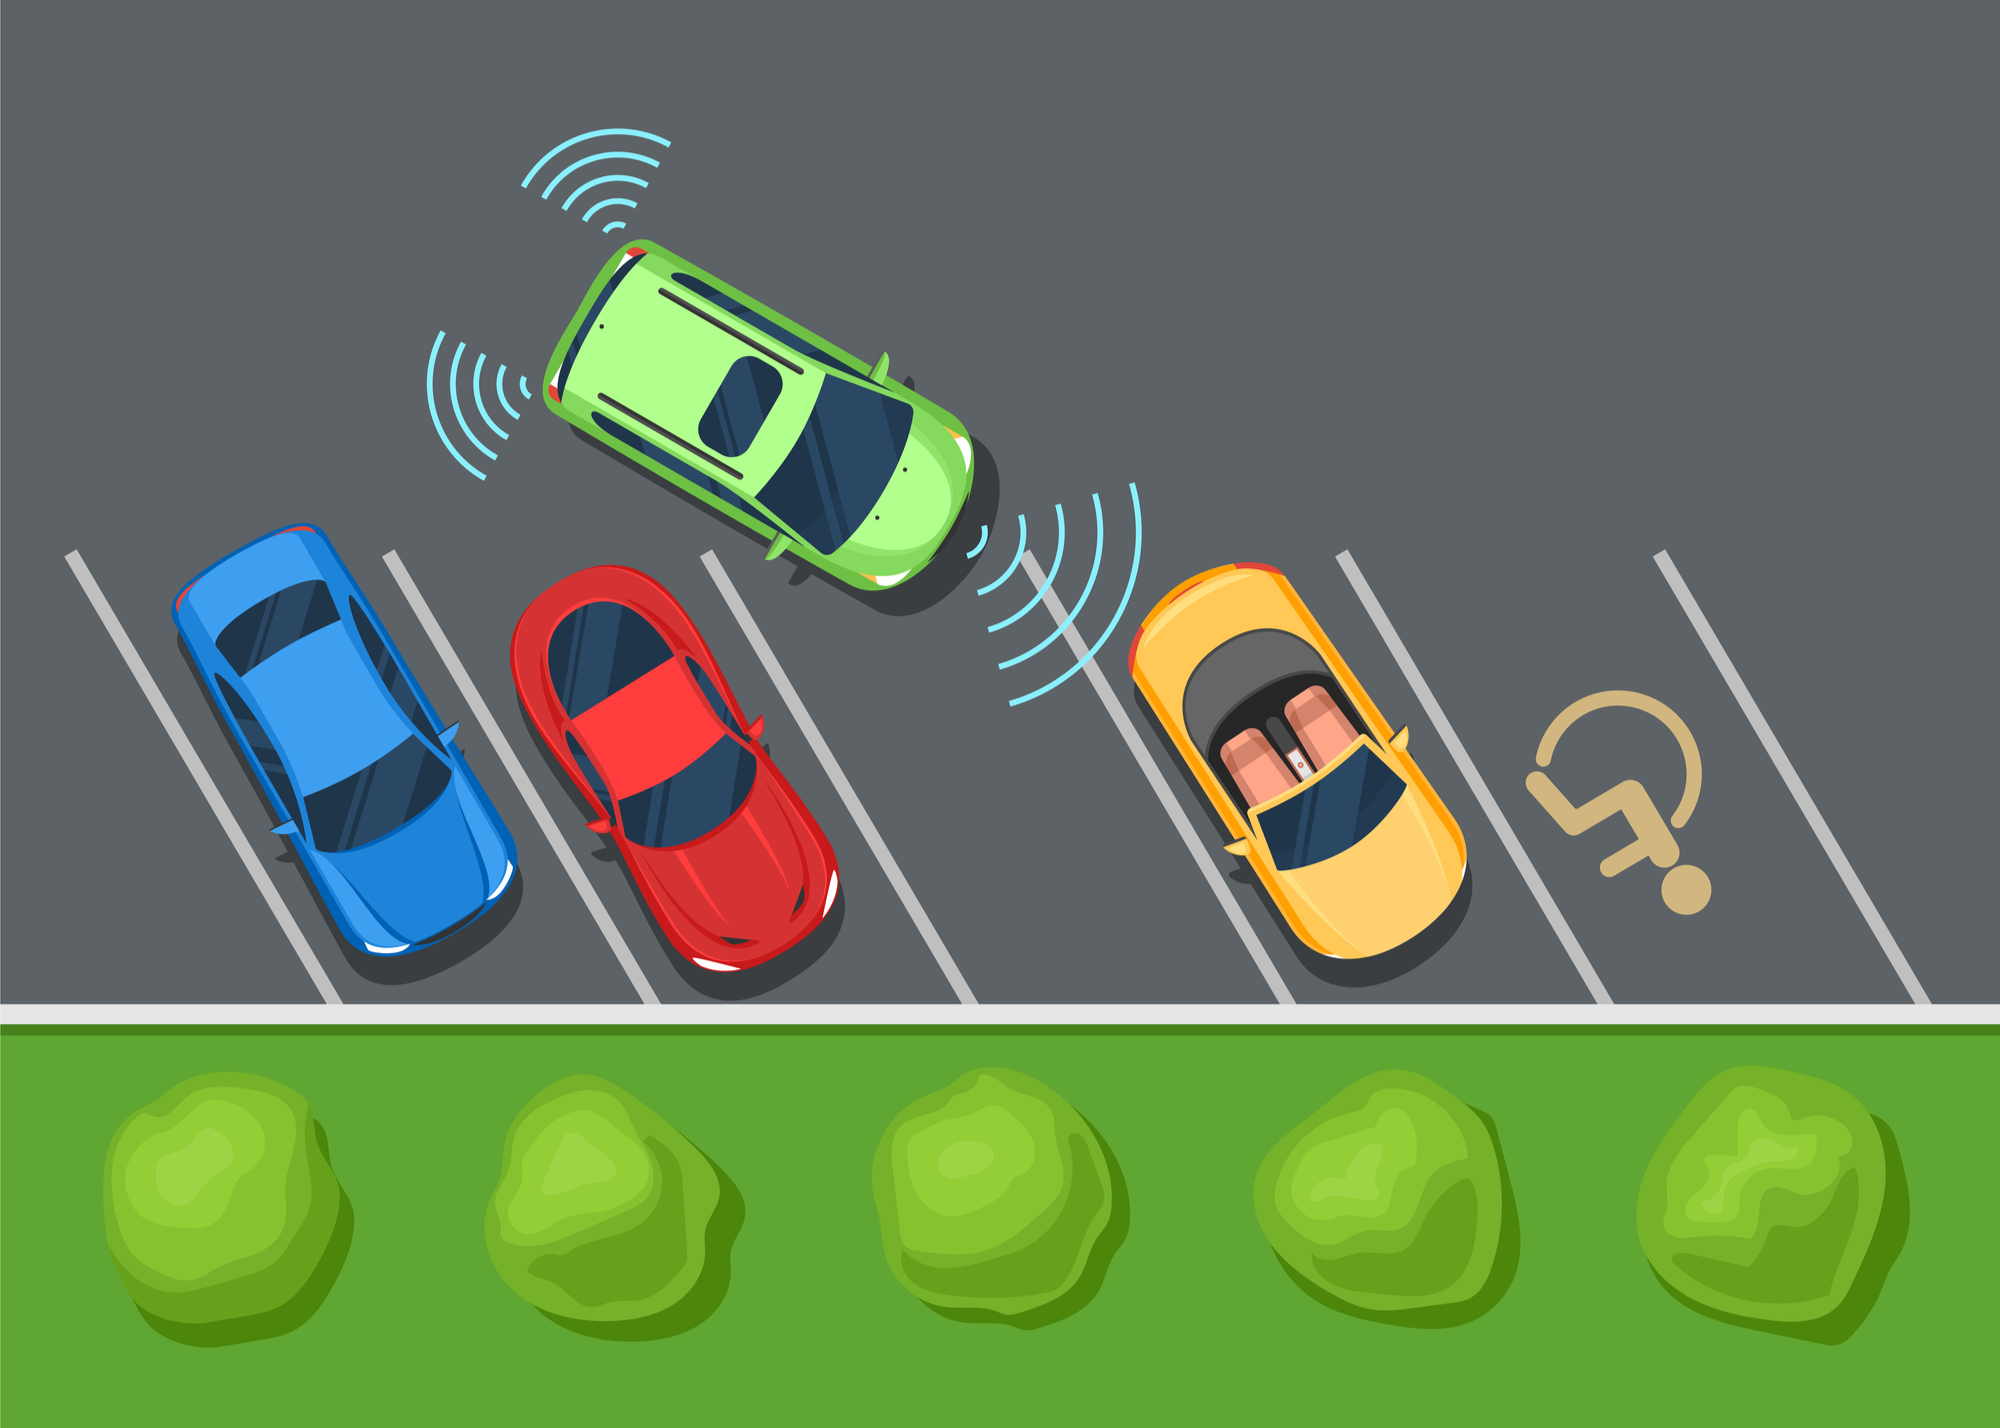 IoT in Smart Parking - IoT Applications - Edureka